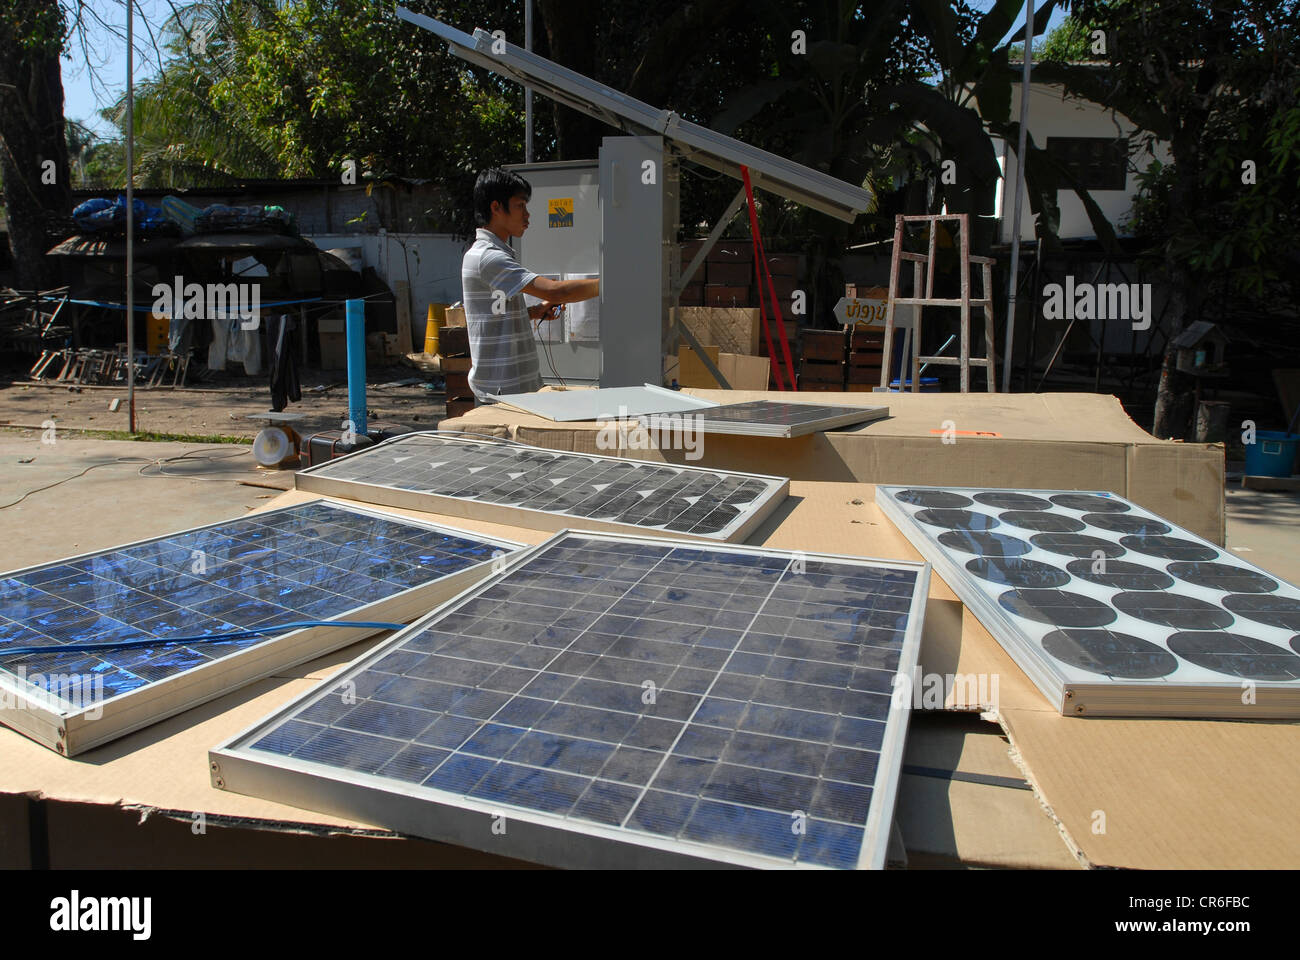 Laos Vientiane , République démocratique populaire lao-société allemande Sunlabob installer des modules d'énergie solaire et photovoltaïque dans les villages distants sécurisés pour l'électrification rurale avec solution hors réseau Banque D'Images